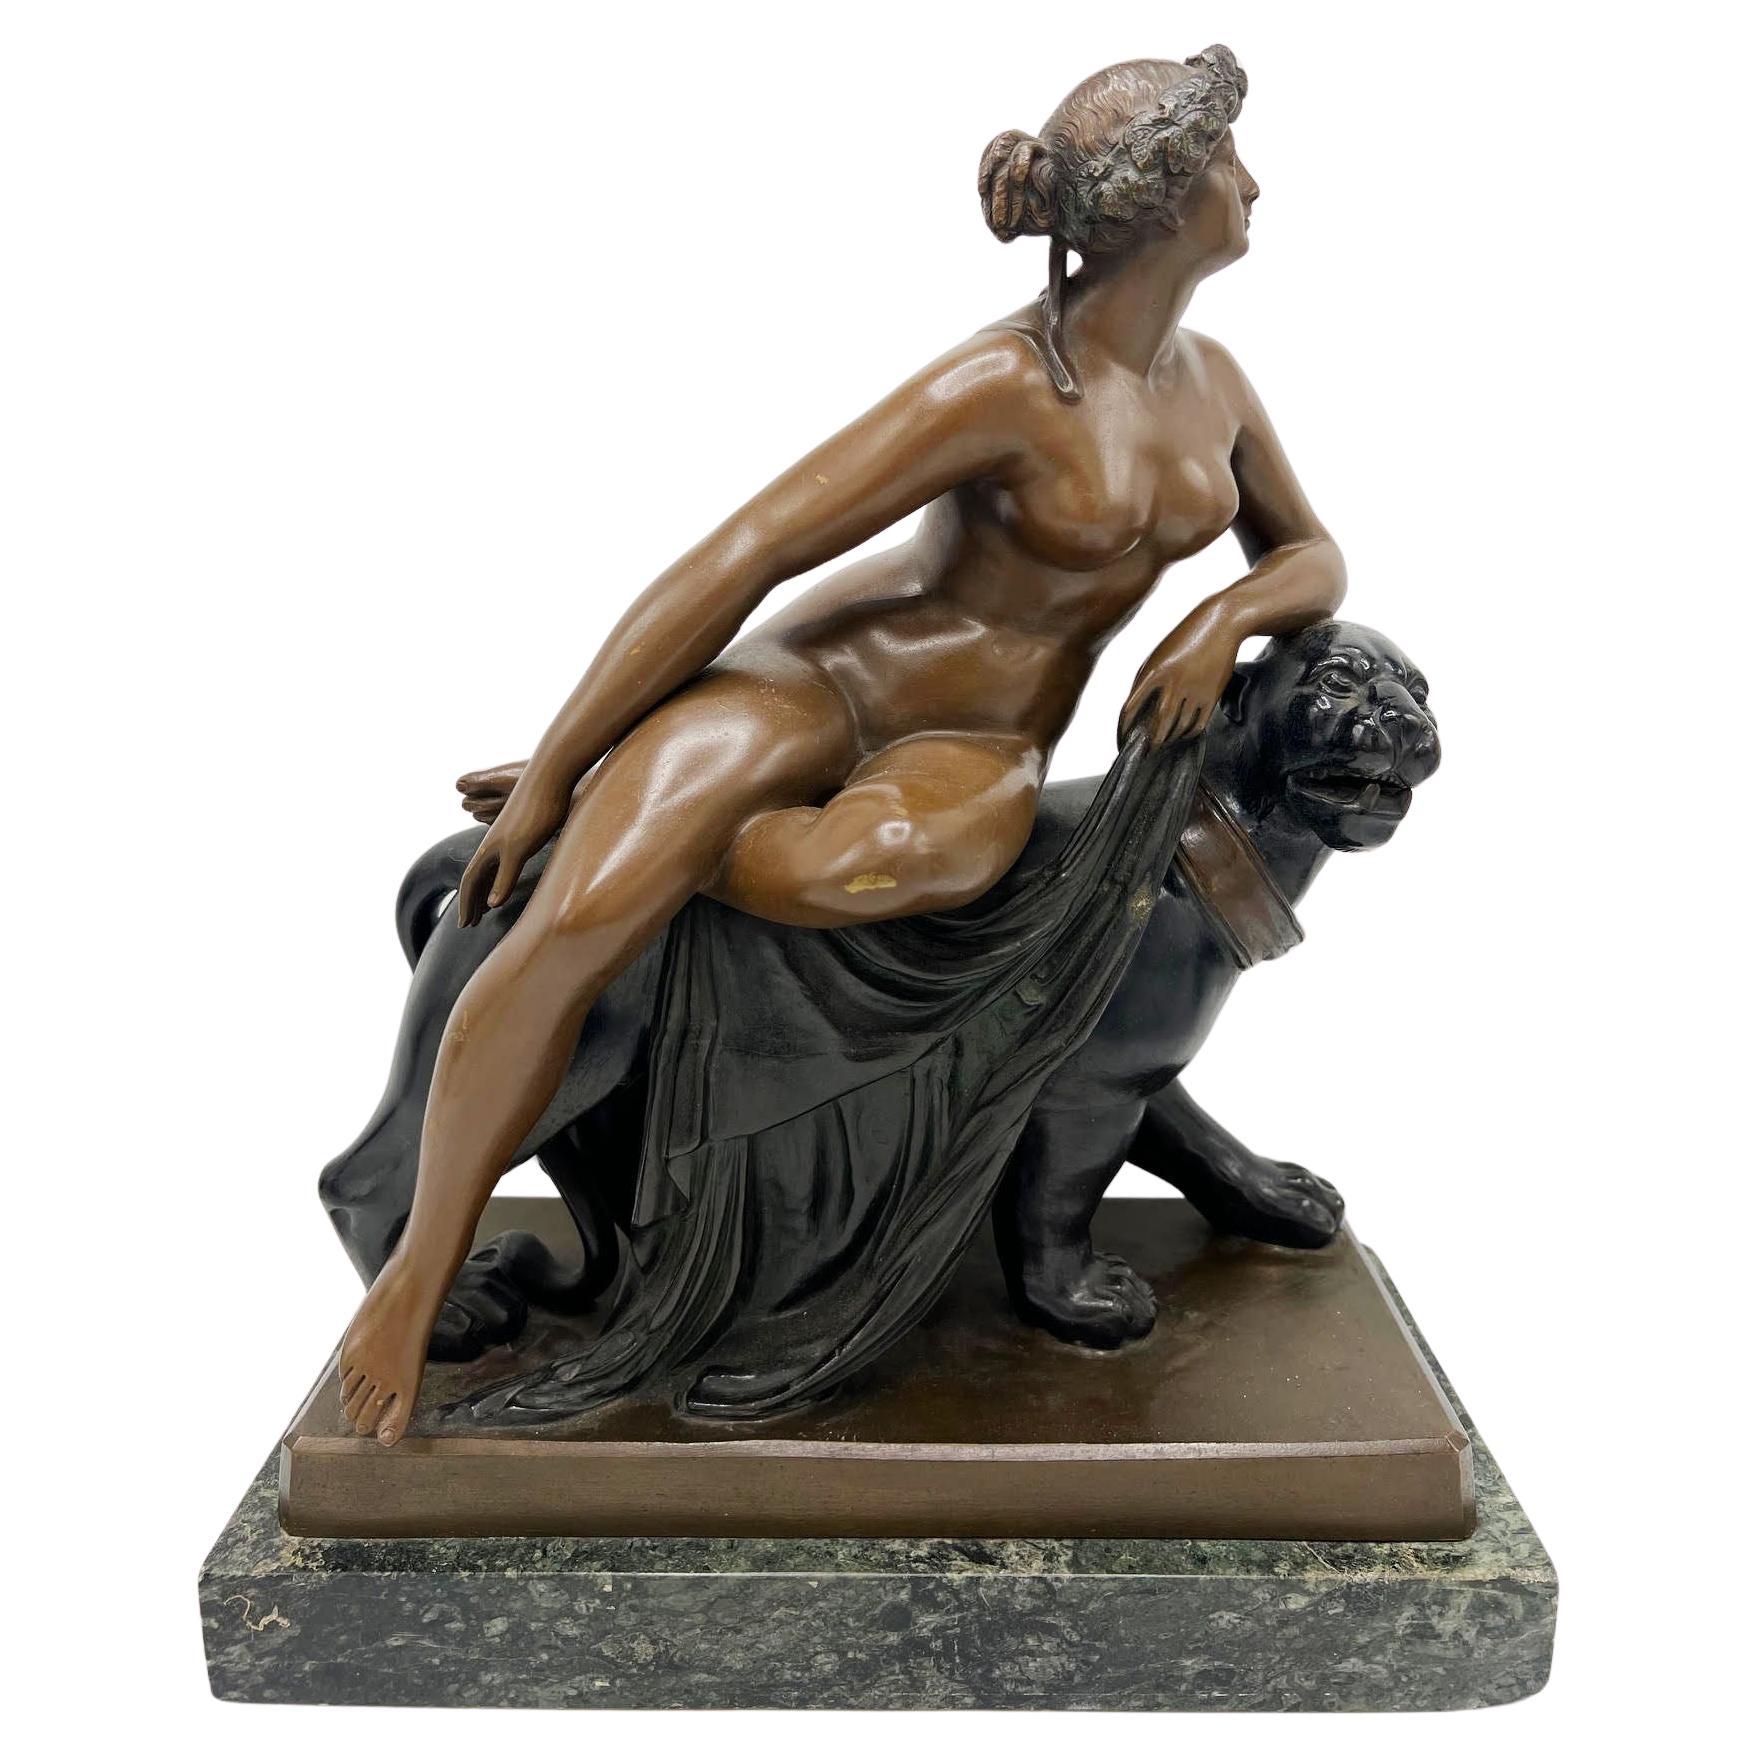 Bronze Sculpture "Ariadne" Model by Johann Heinrich von Dannecker